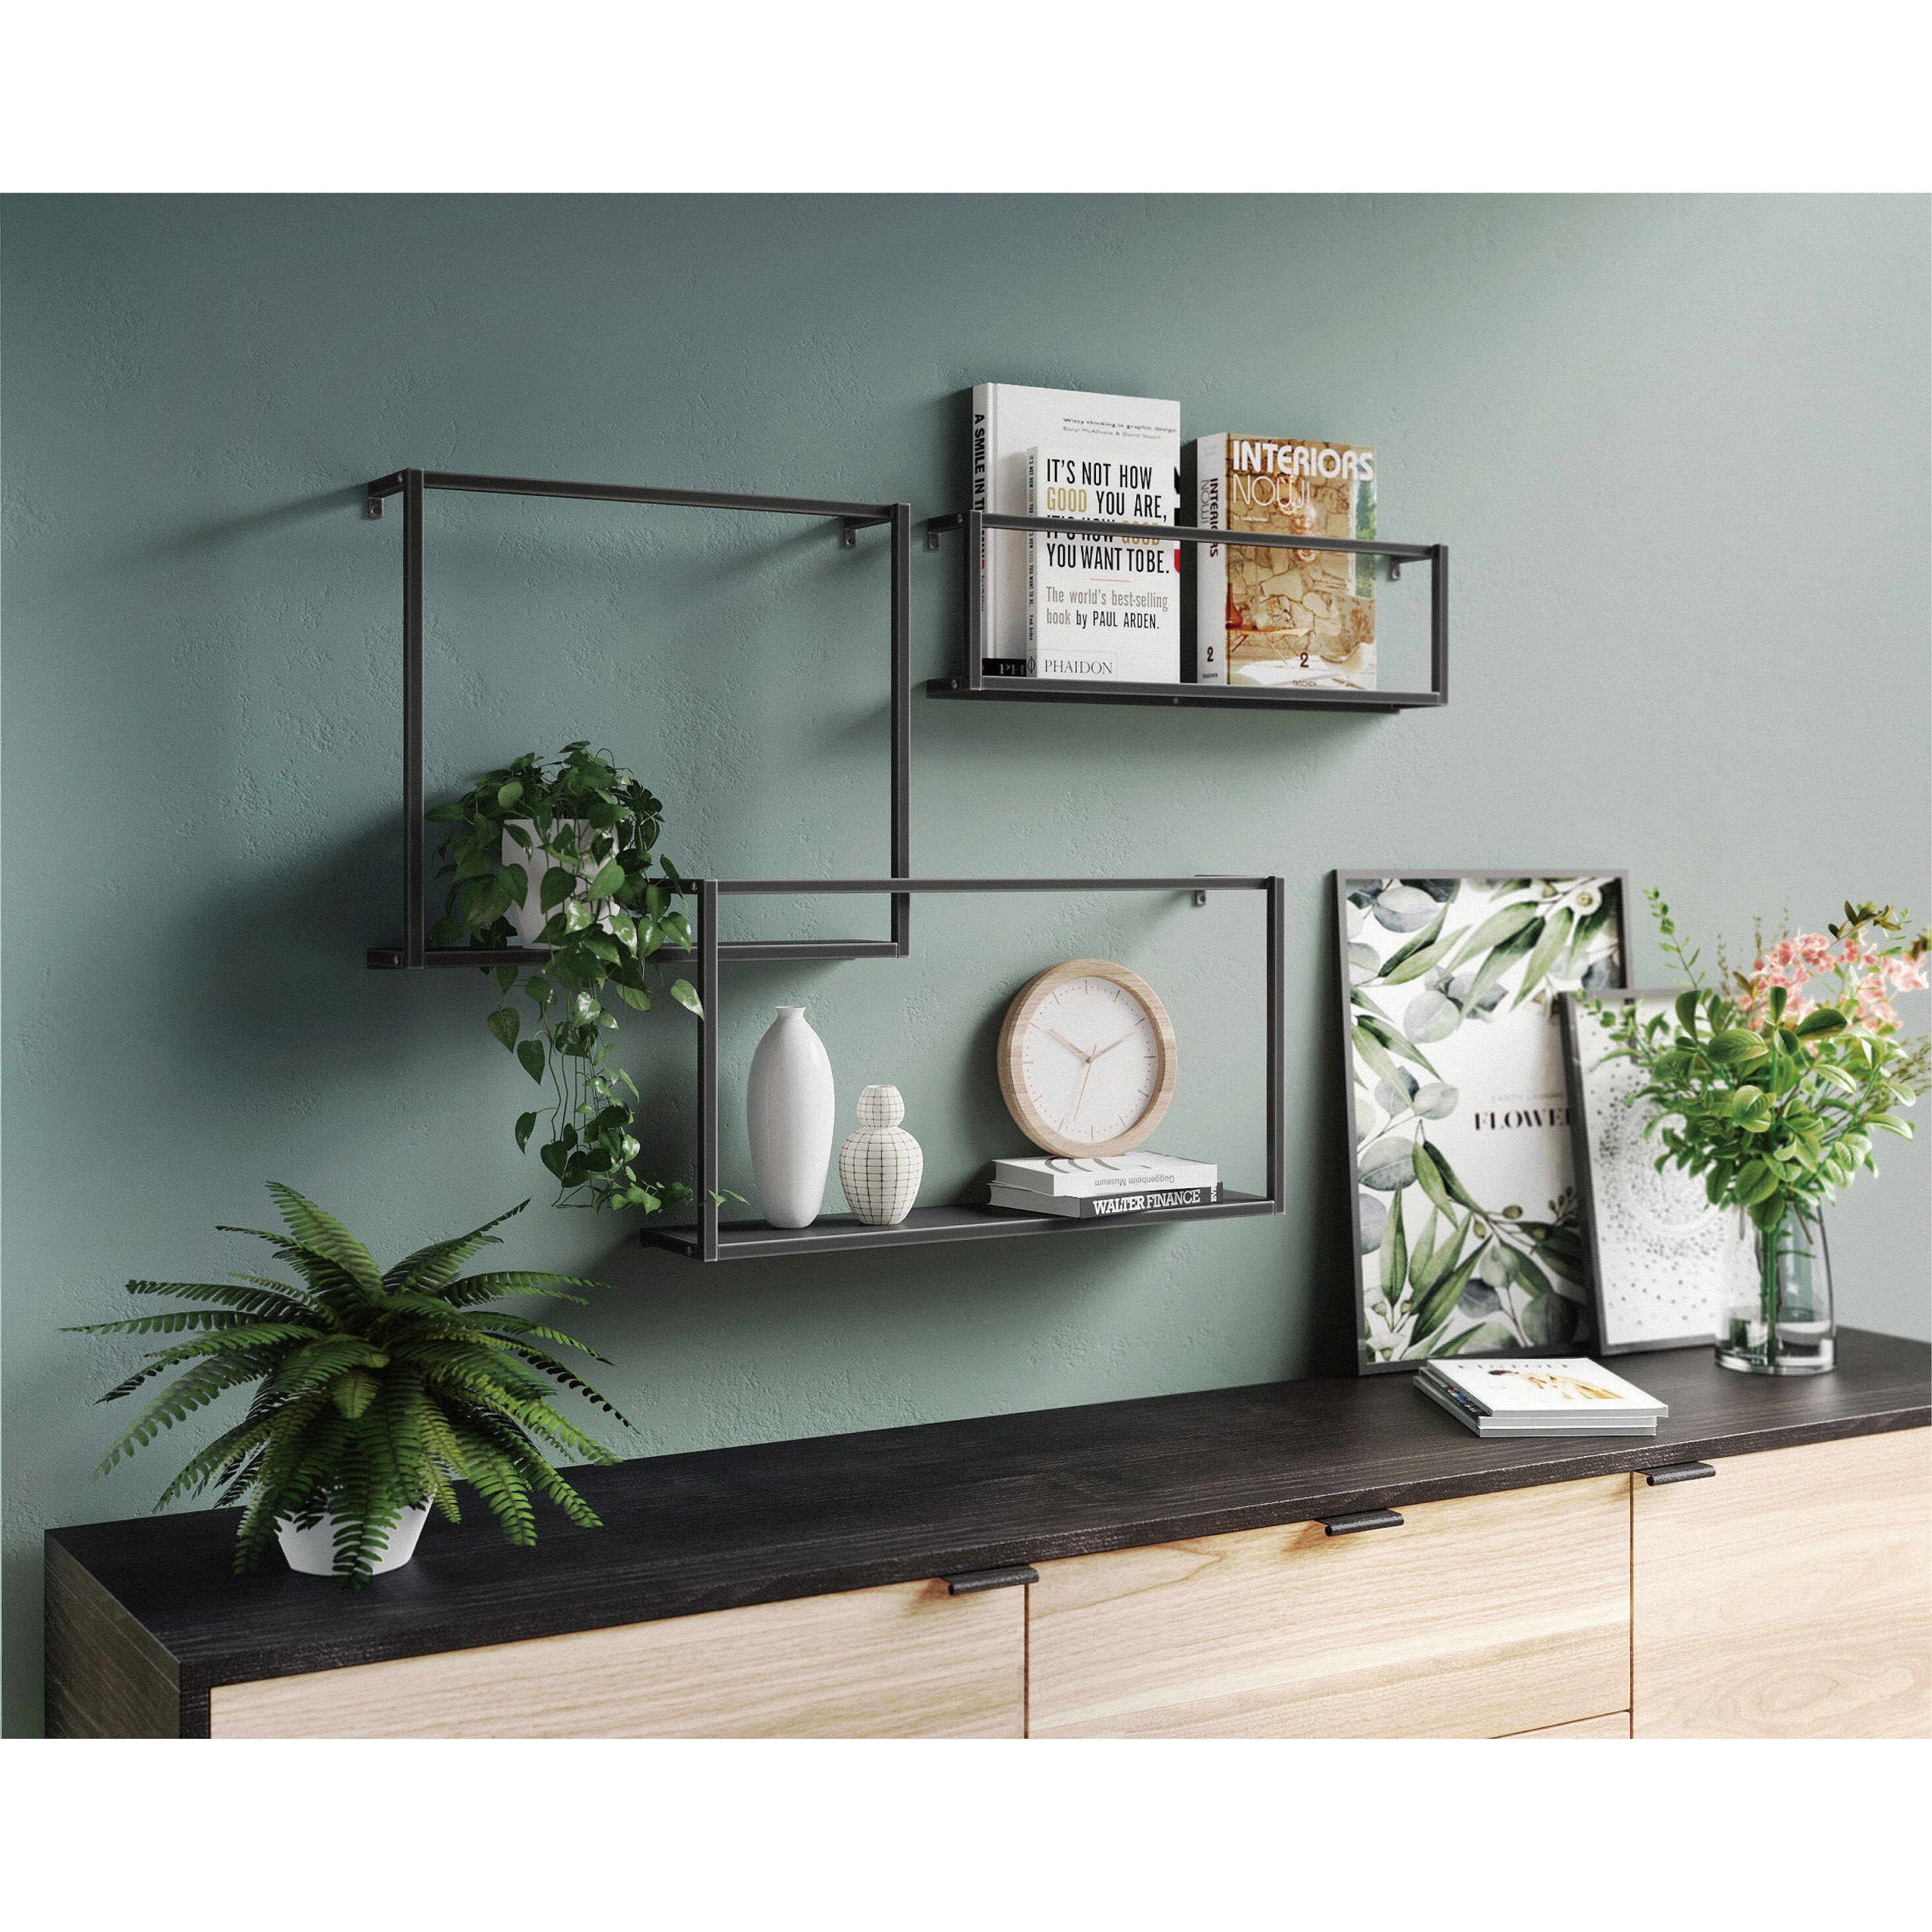 Cocoyard Metal Accent Wall Shelf, Set of 3 - Black